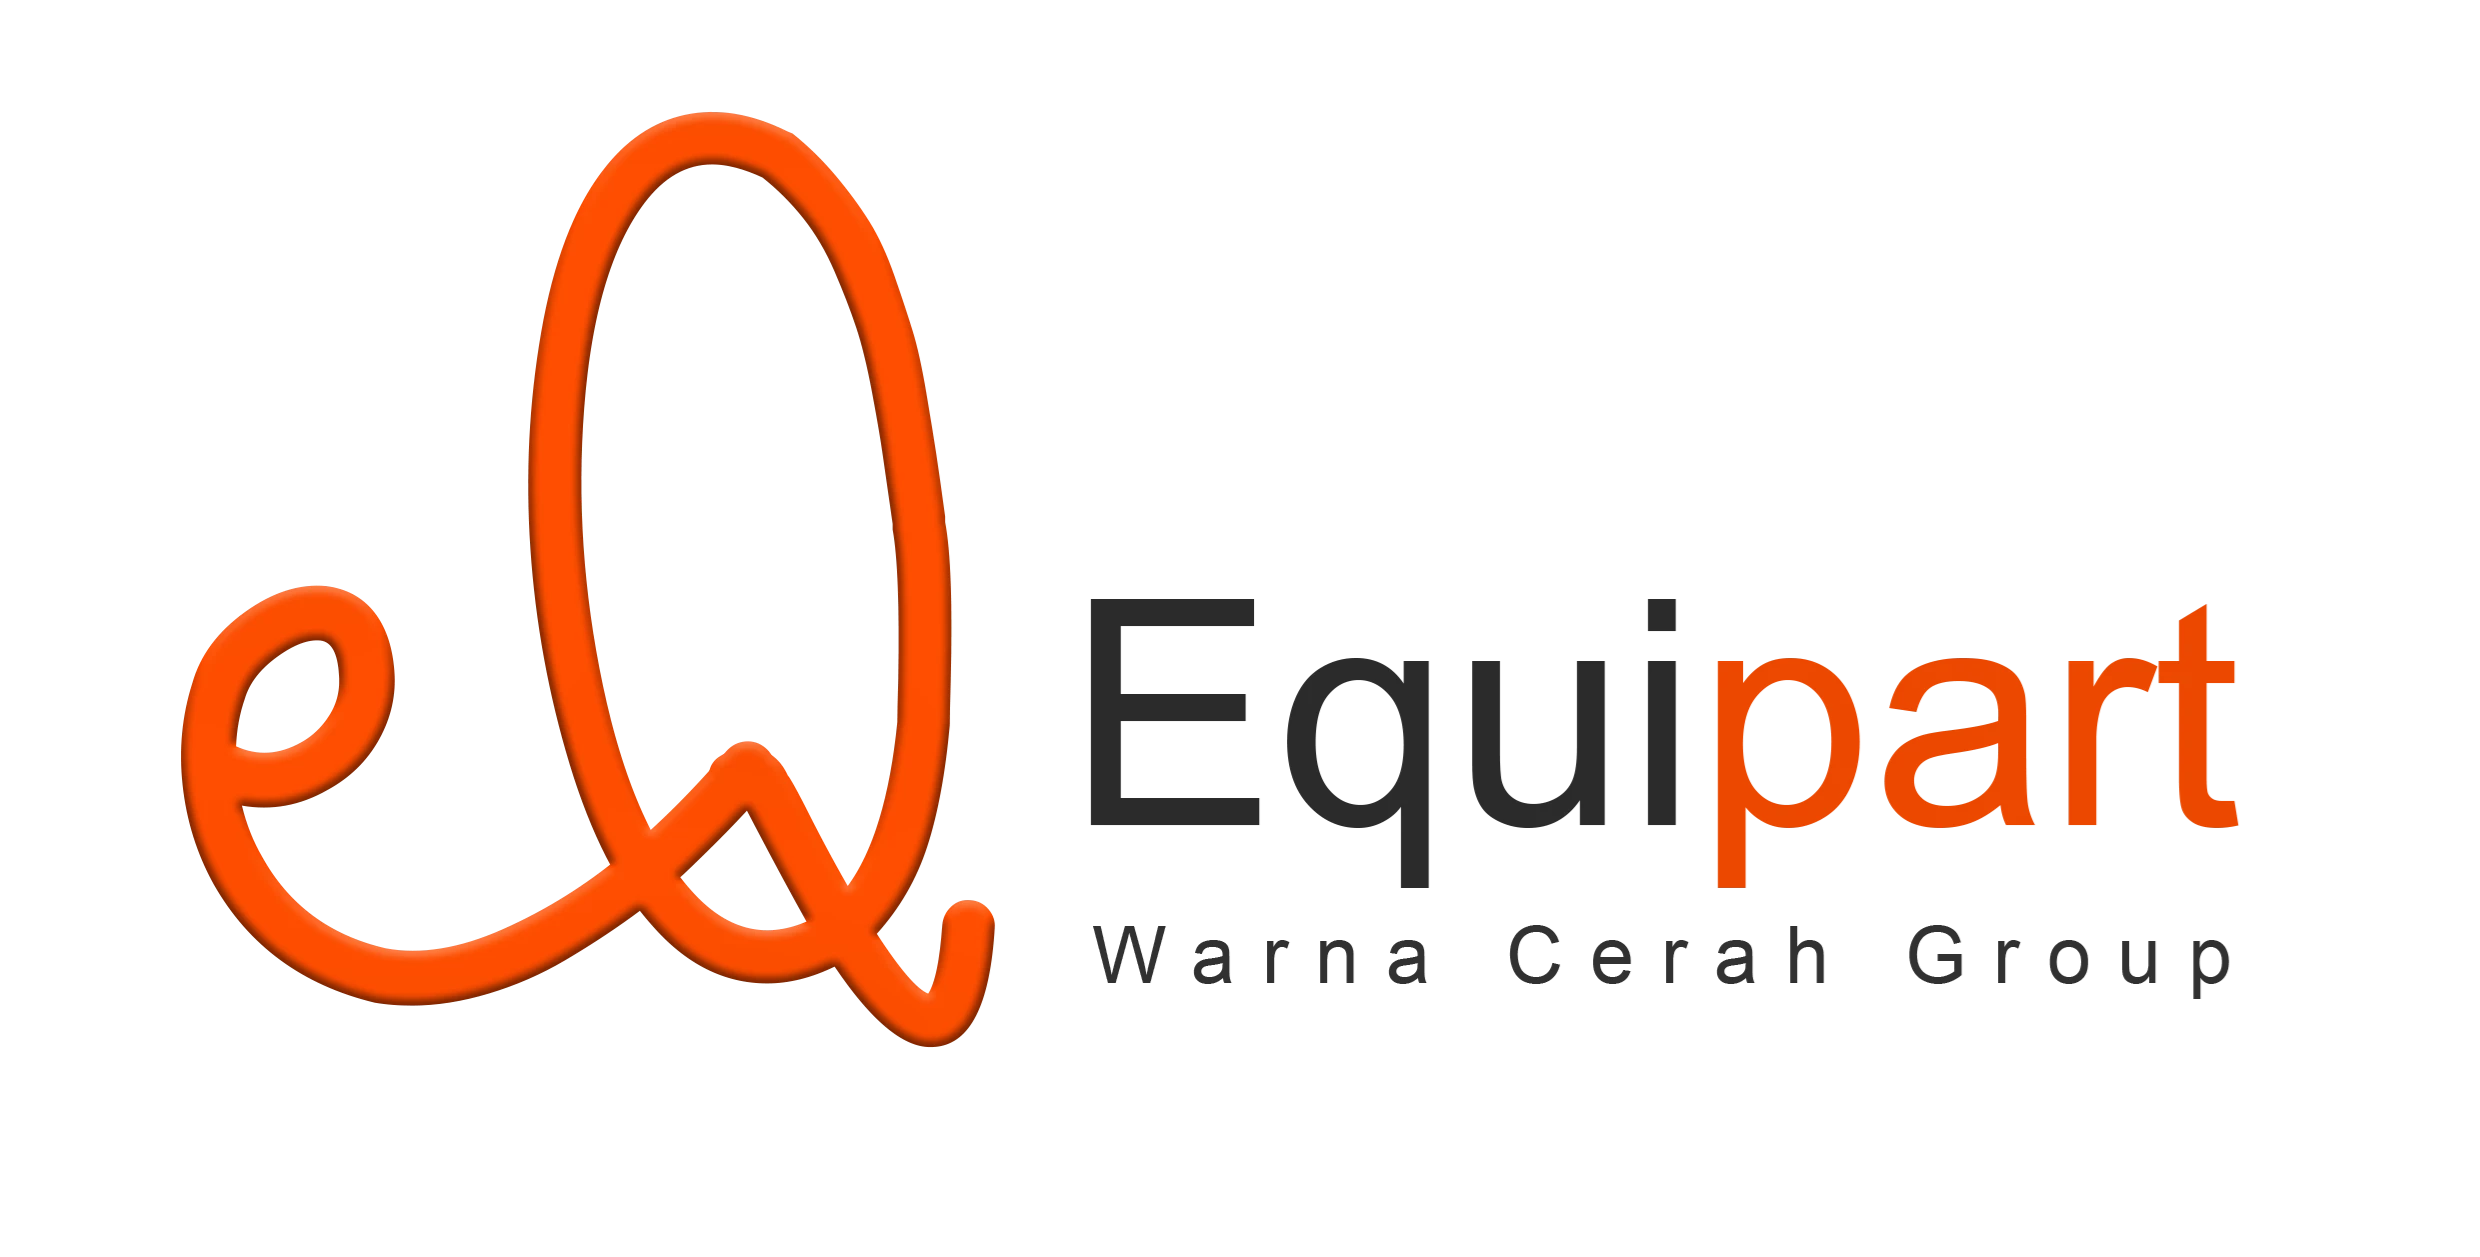 Logo CV. Warna Cerah